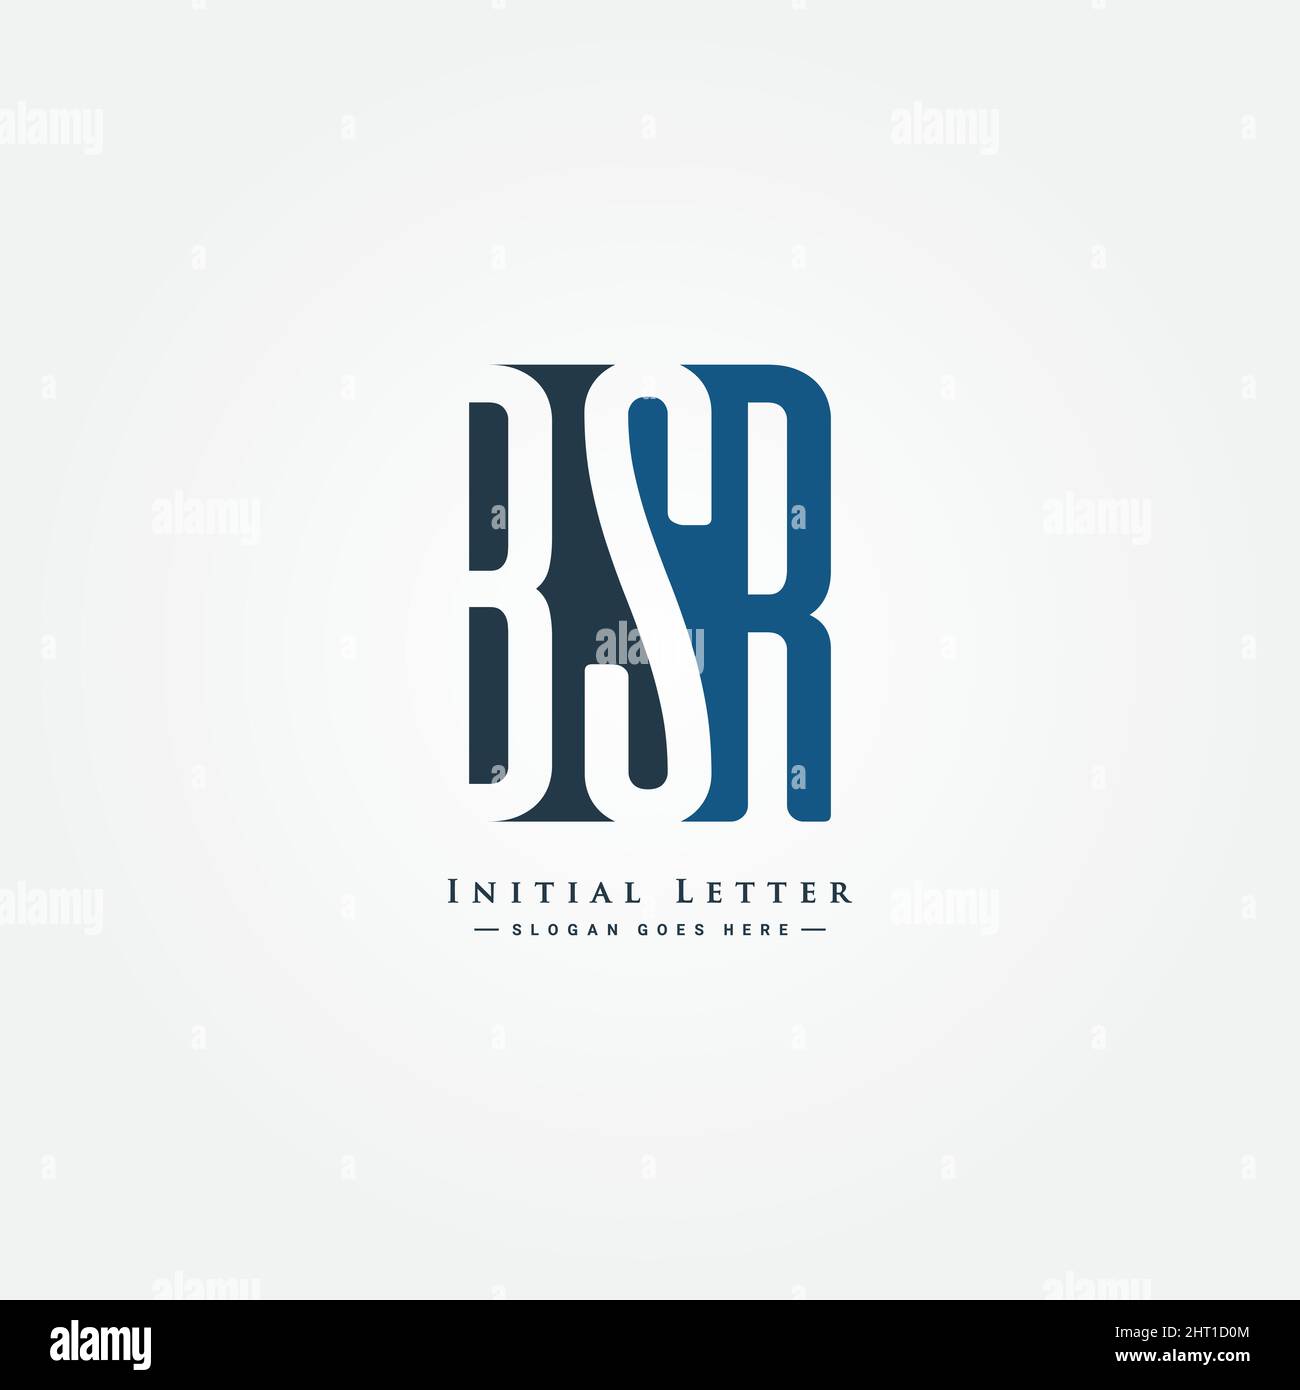 Minimal Business Logo für Alphabet BSR - Anfangsbuchstabe B, S und R - Vektor-Logo-Vorlage für Firmennamen-Initialen Stock Vektor